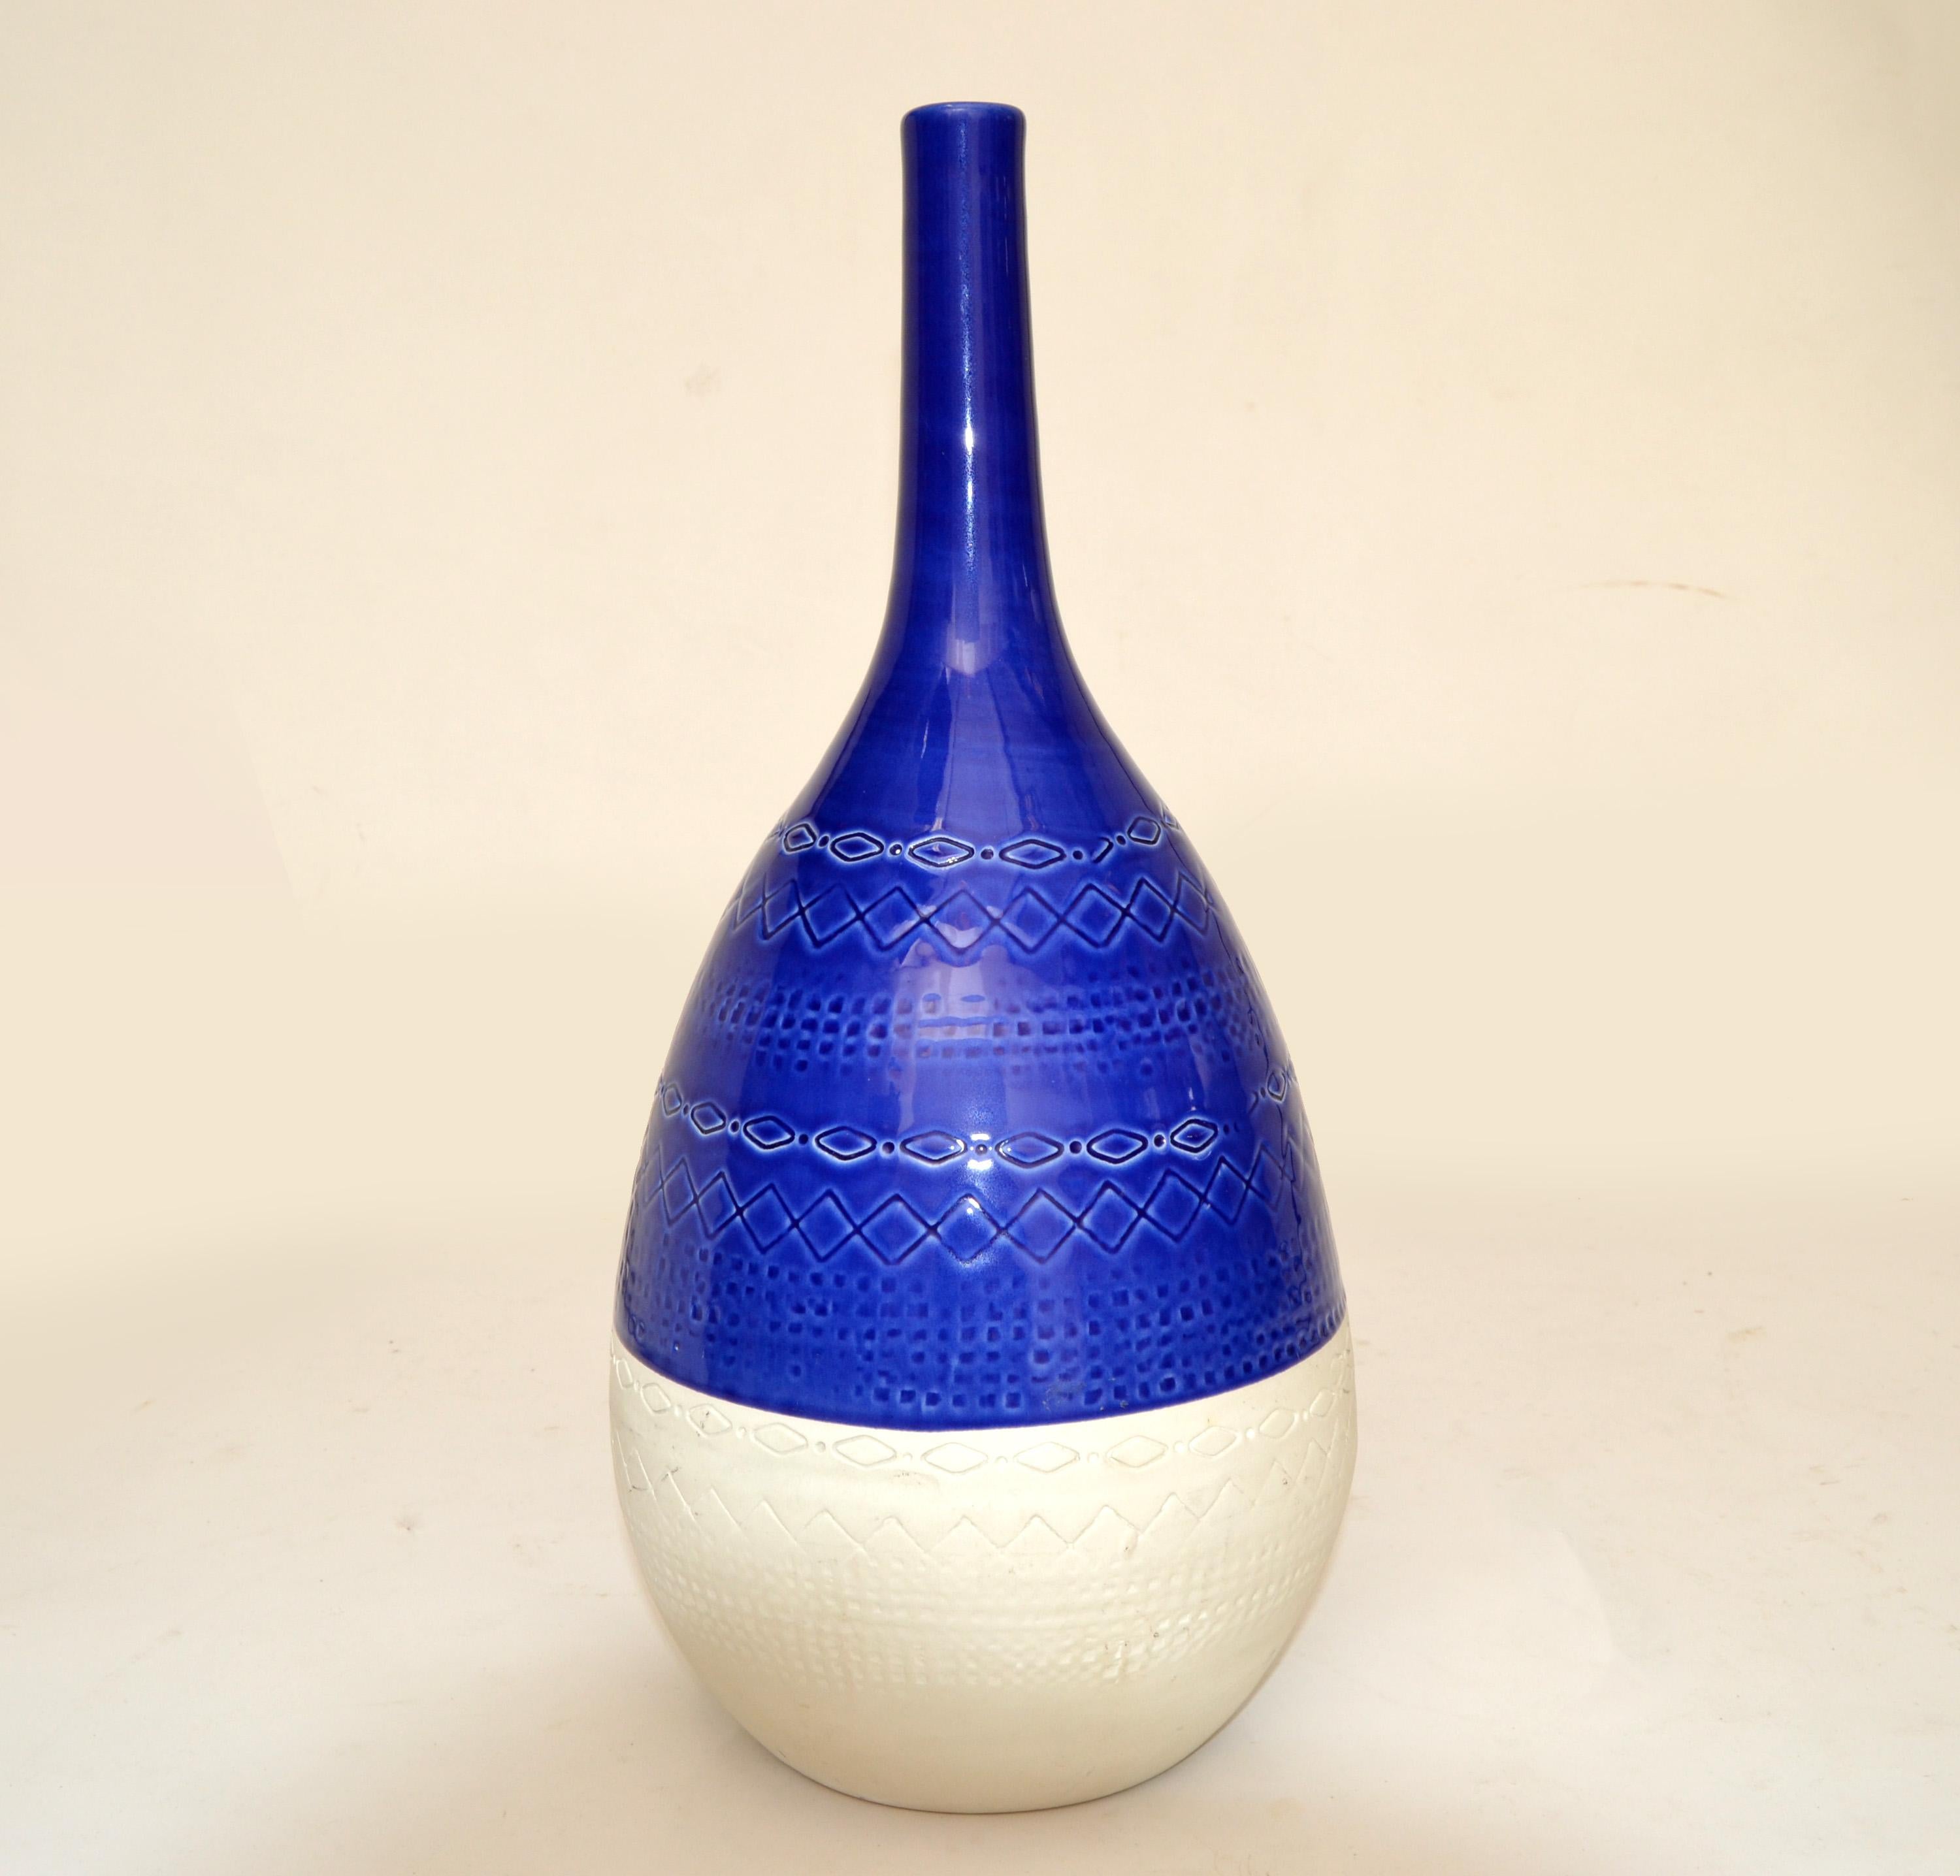 Mid-Century Modern glasierte kobaltblaue und rohweiße Keramikvase, Gefäß, Dekanter im Stil von Bitossi, Italien.
Makers Mark unten, Made in Italy Ceramiche Tadinate.
 